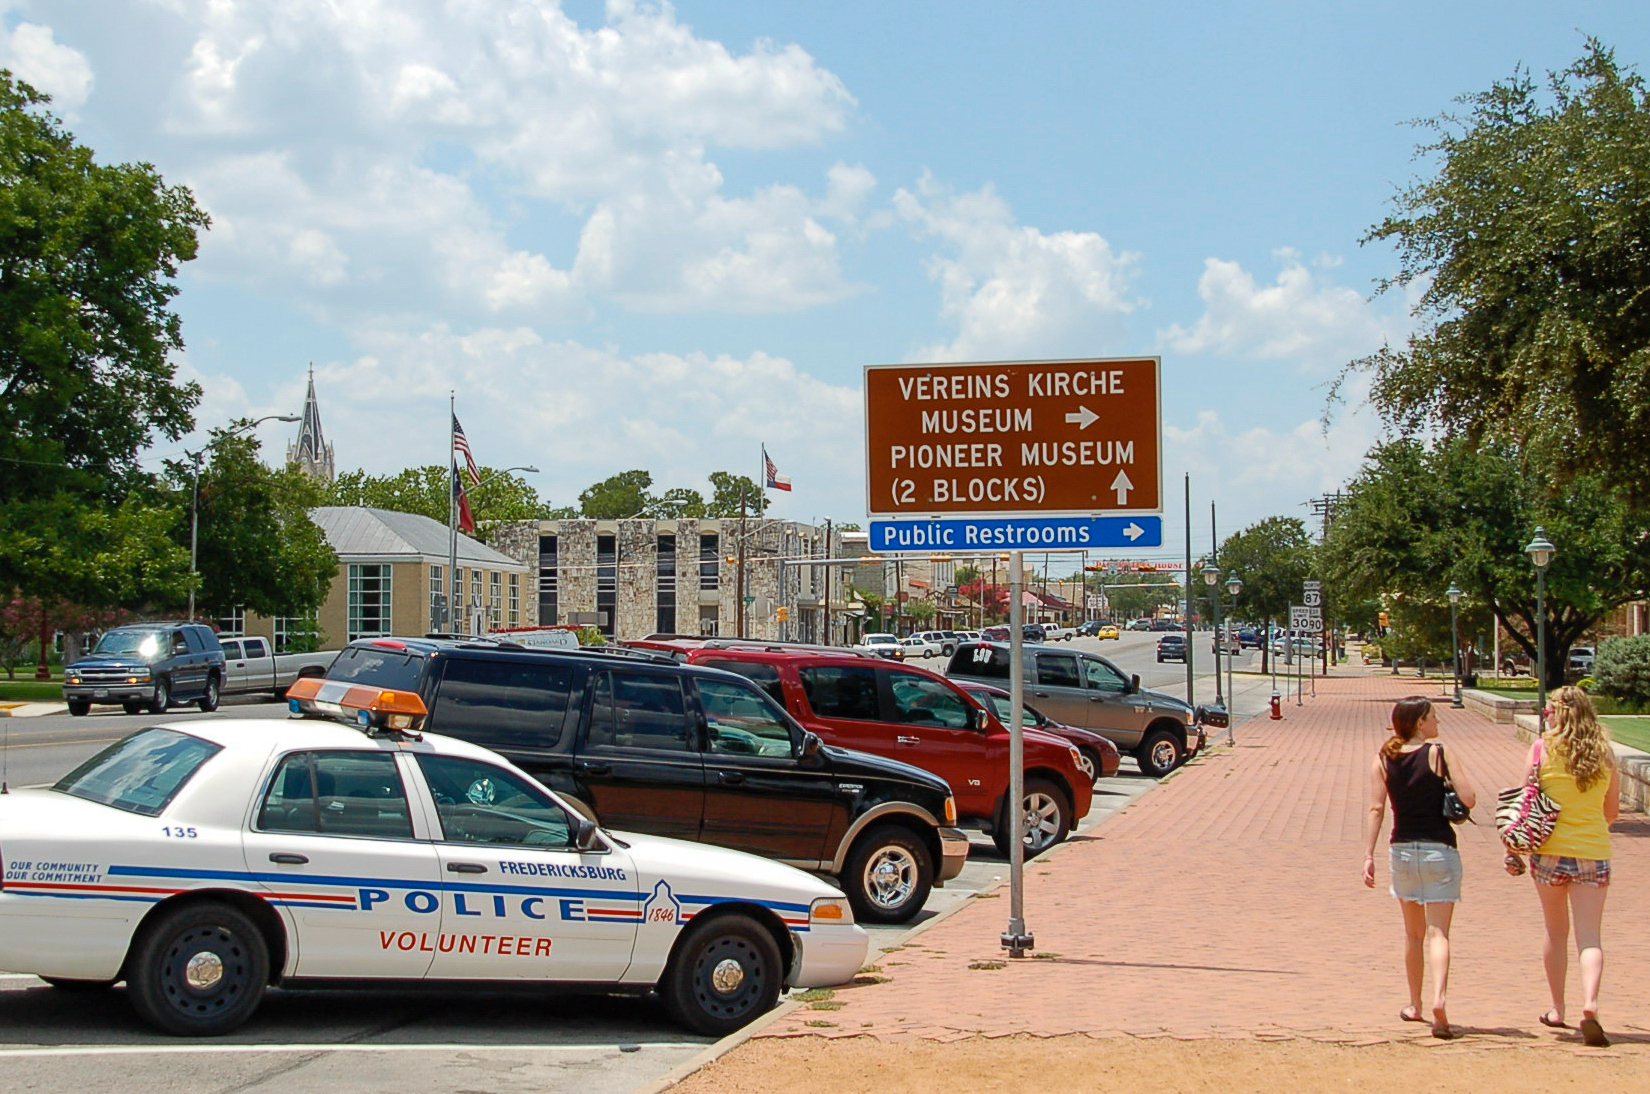 Straßenbild in Fredericksburg, Texas, mit Schild zur Vereinskirche und Polizeiwagen